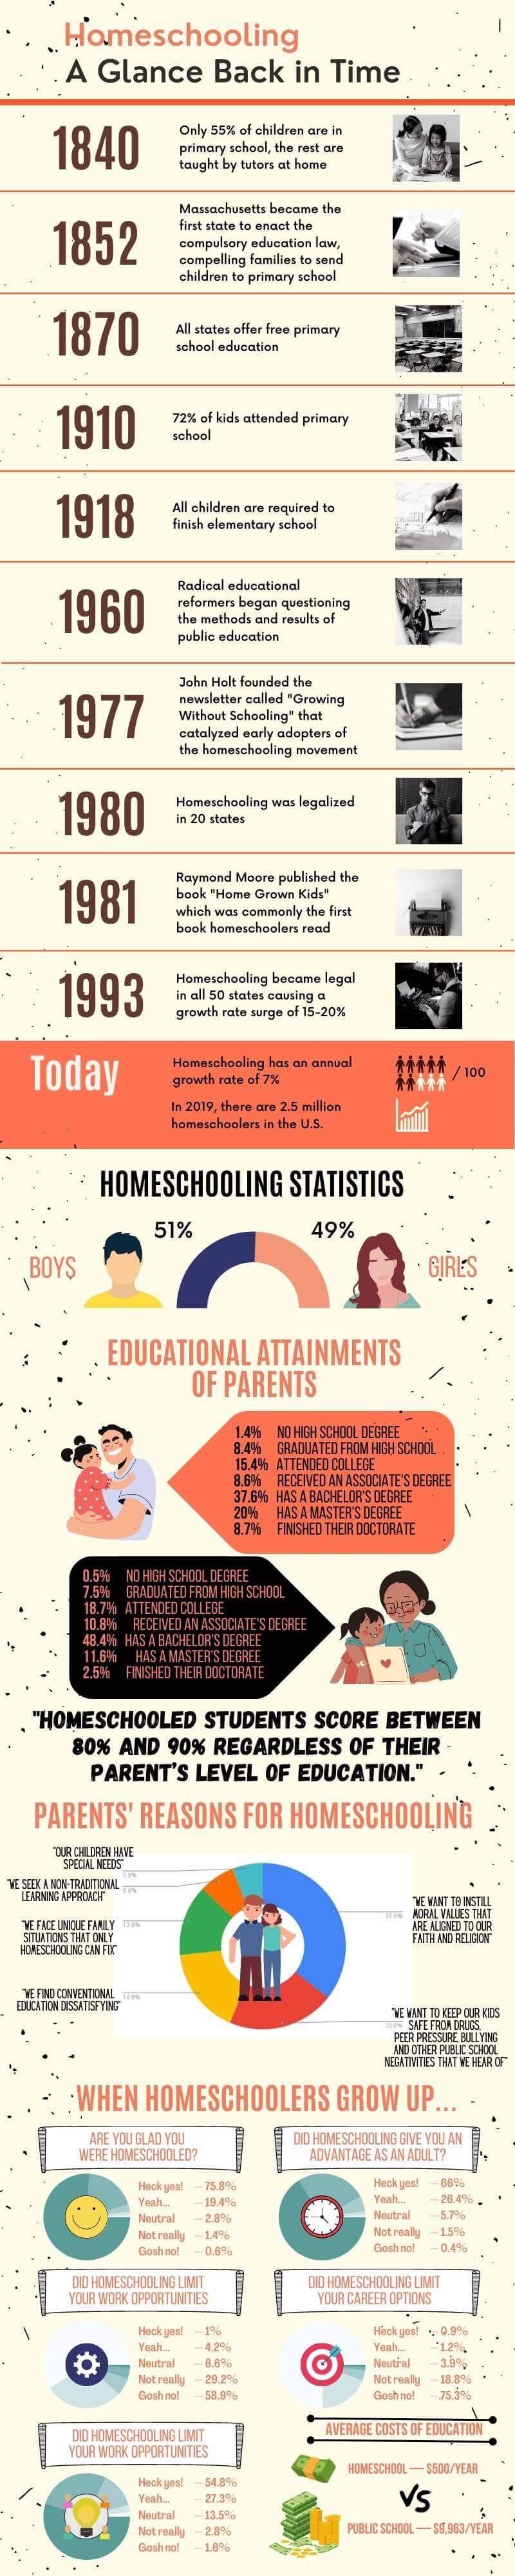 studies on homeschooling vs public schooling